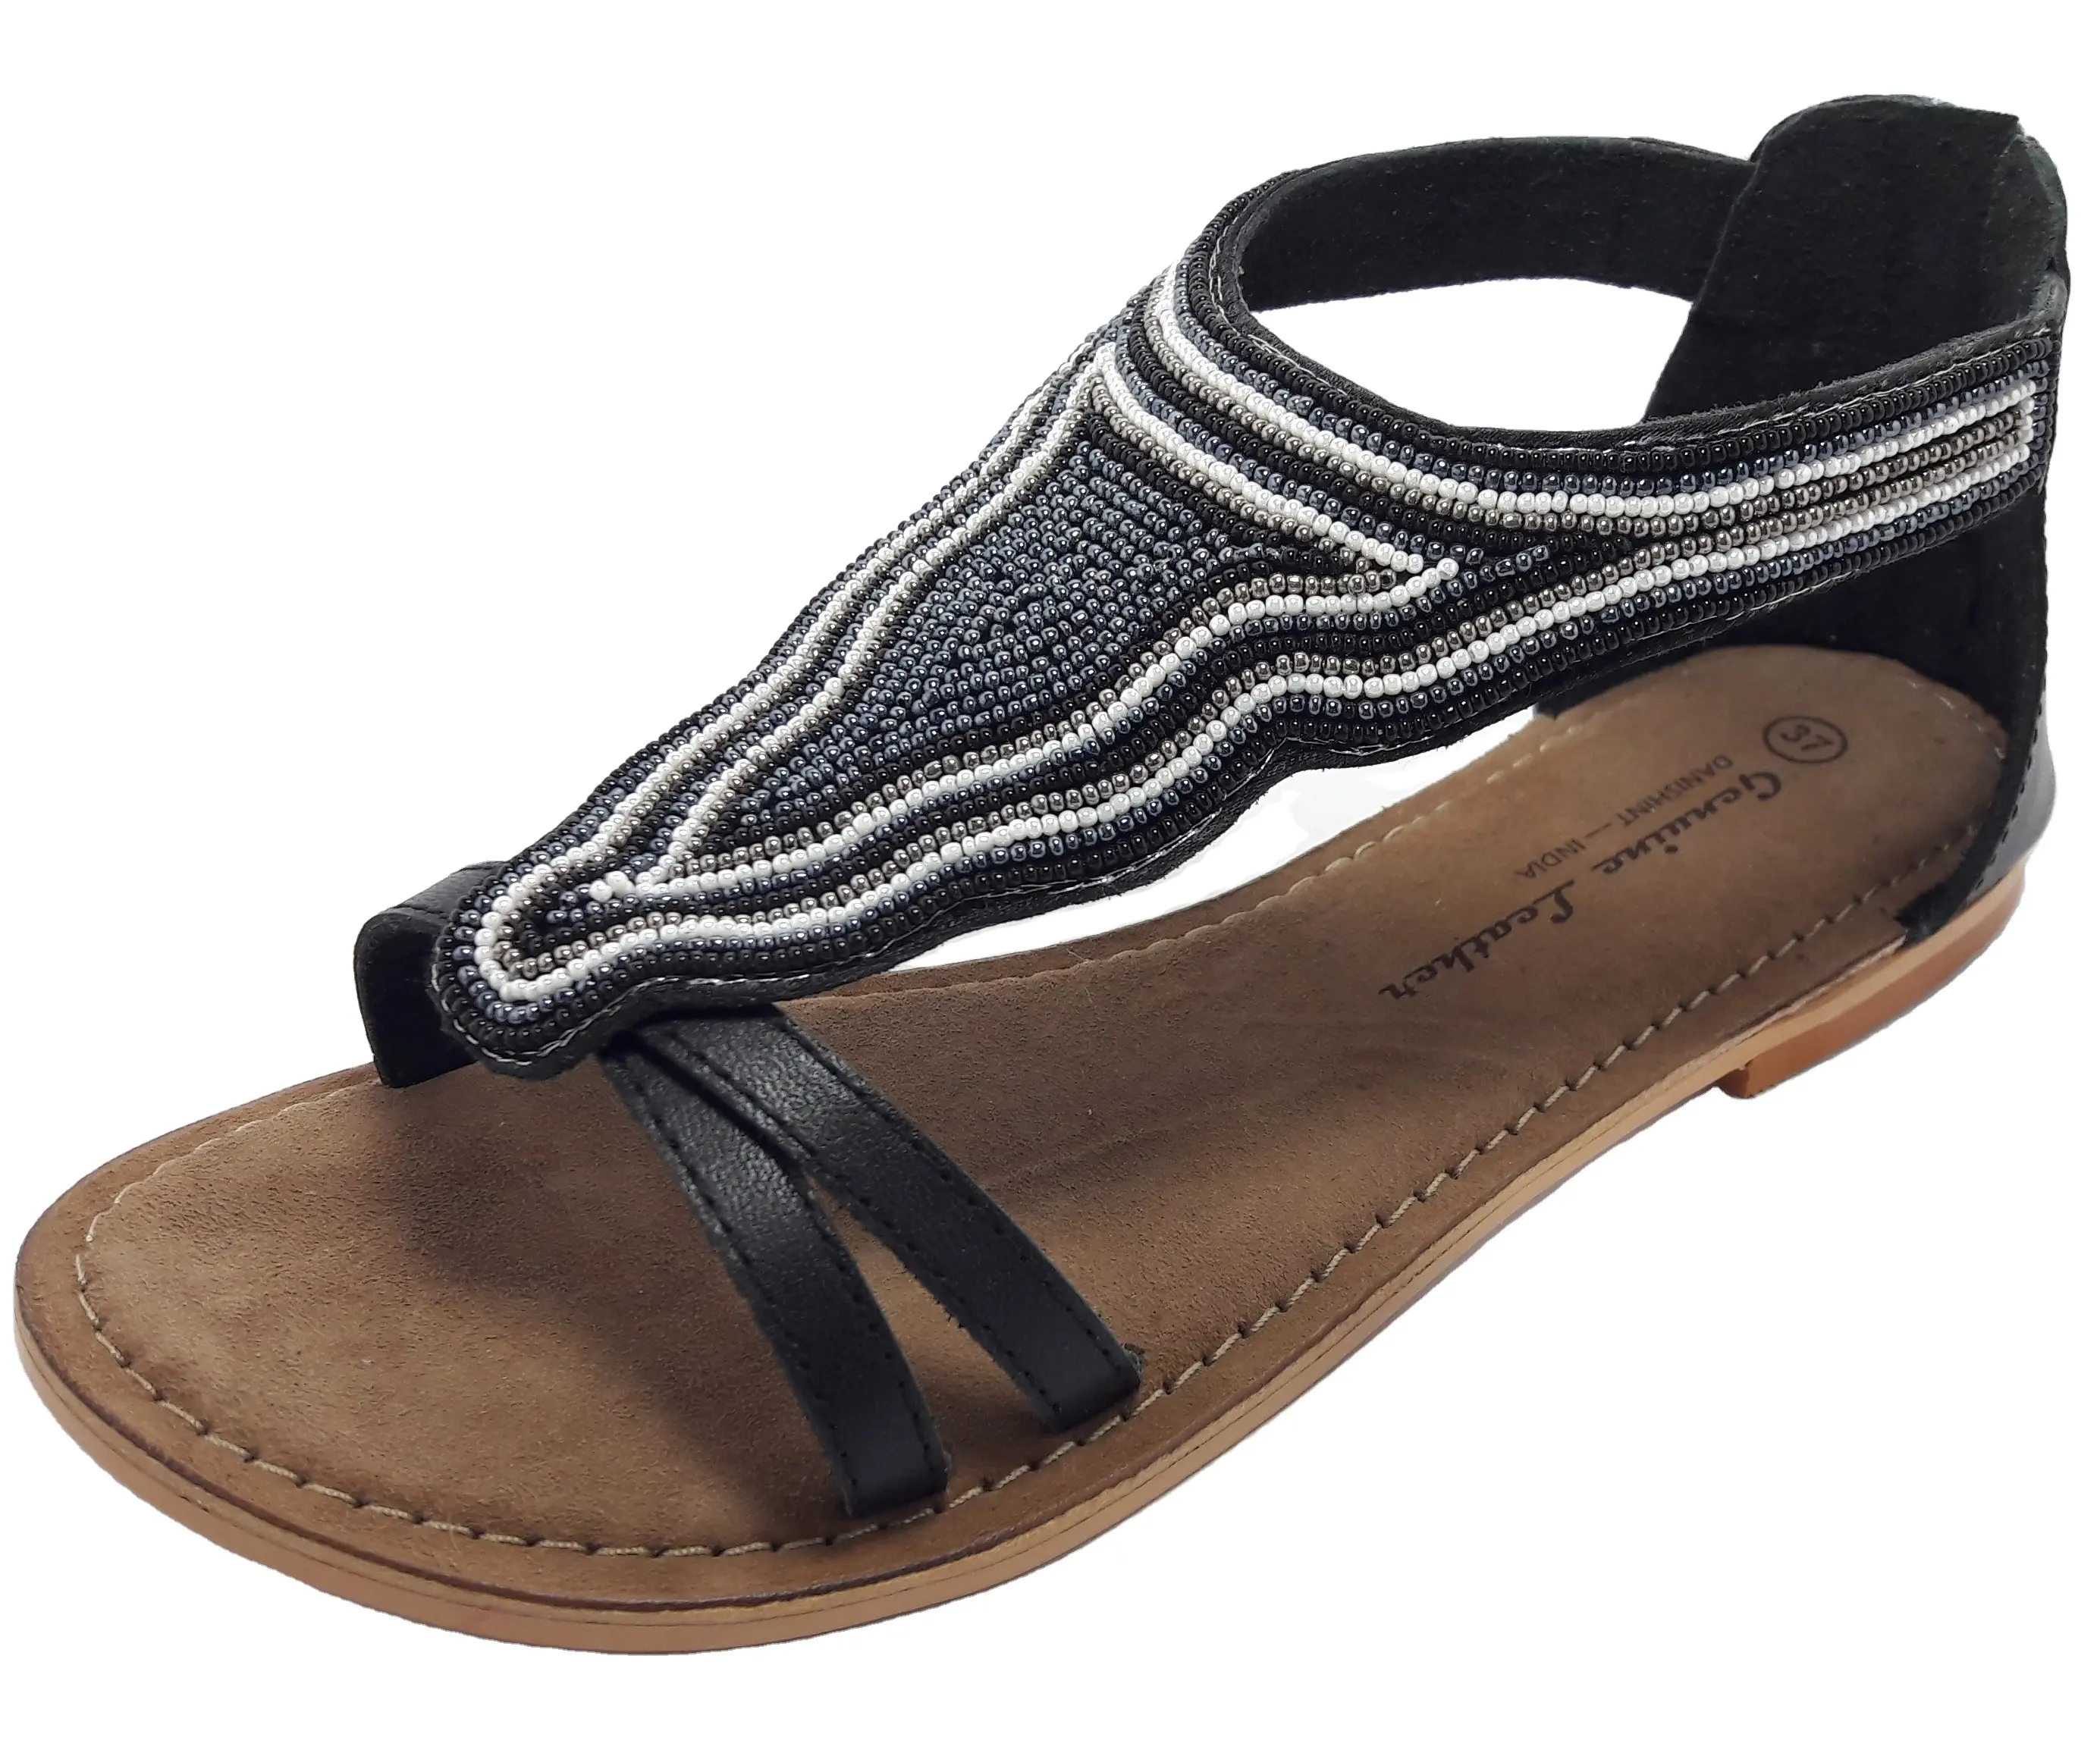 Женские кожаные сандалии с вышивкой из бисера, сандалии Т-образной формы на застежке-молнии, классические женские модные летние трендовые сандалии